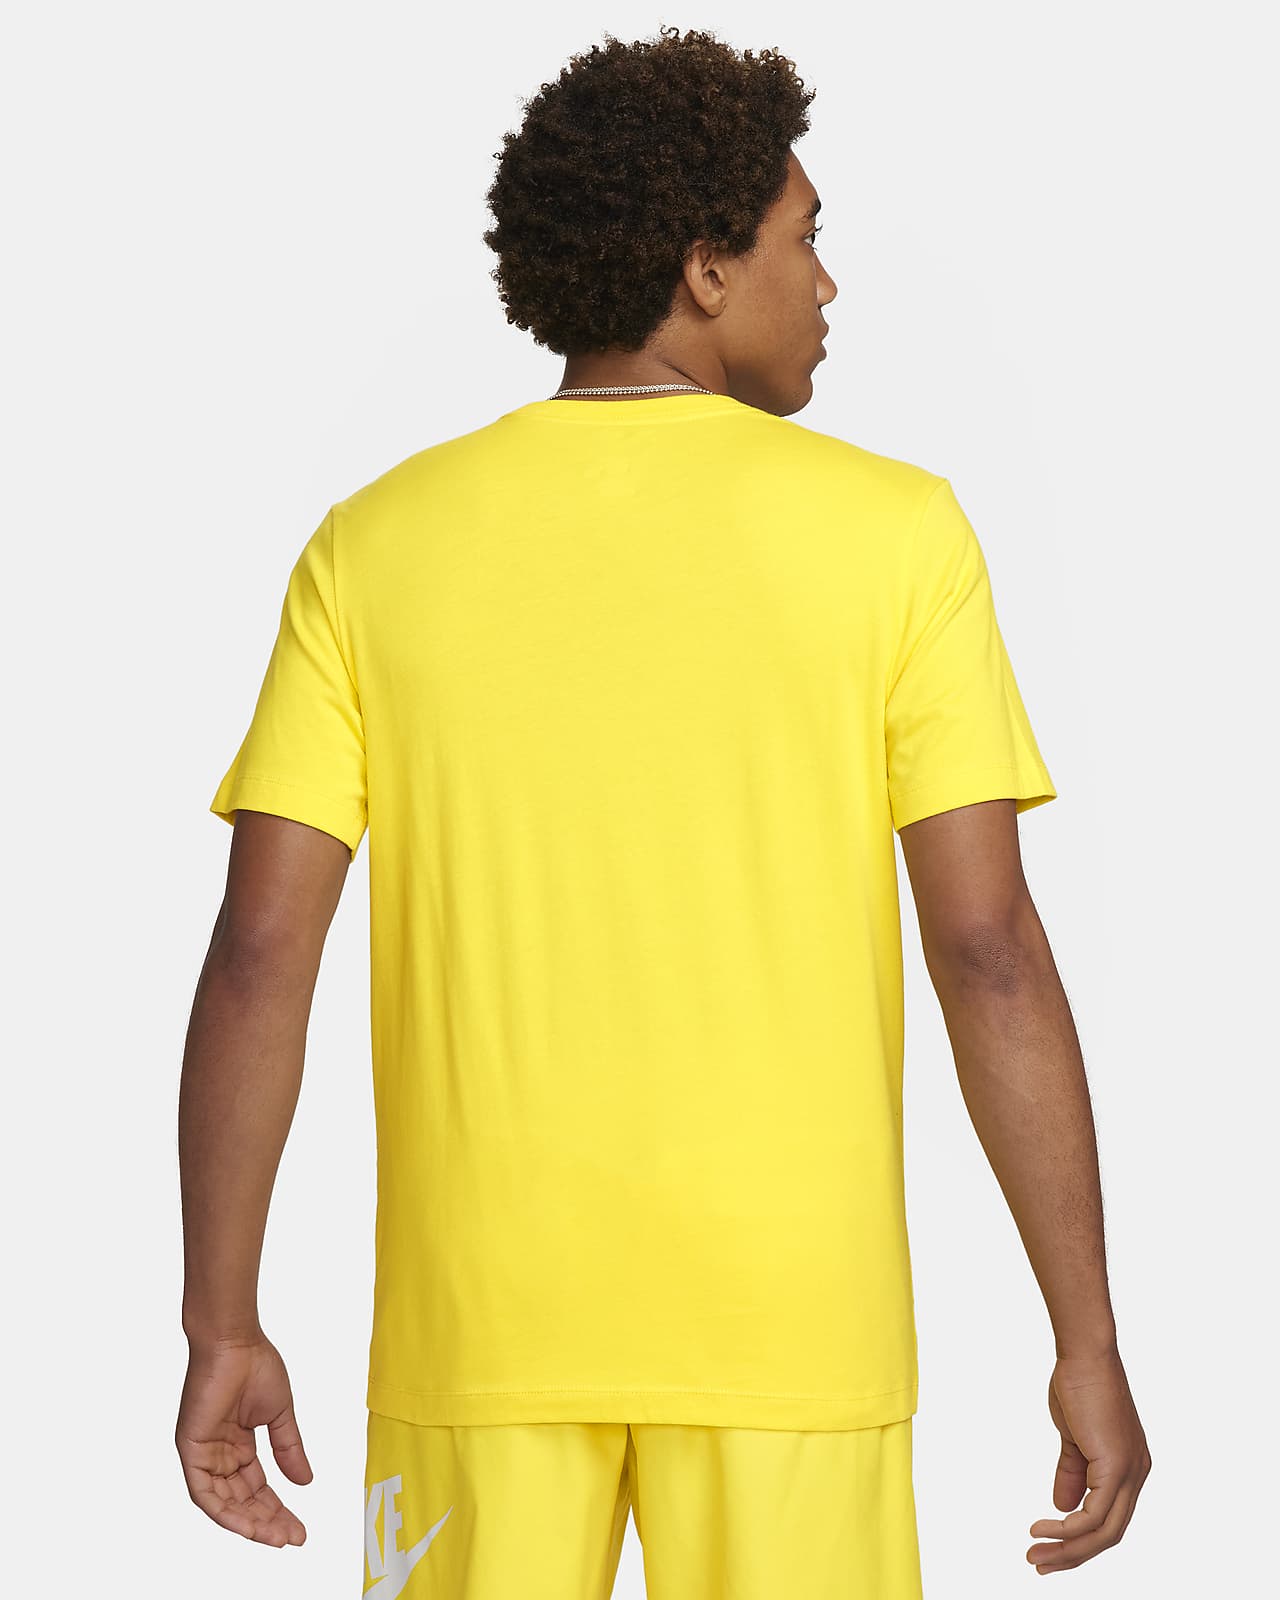 Nike Yoga Dri-FIT Men's Sports T-Shirt